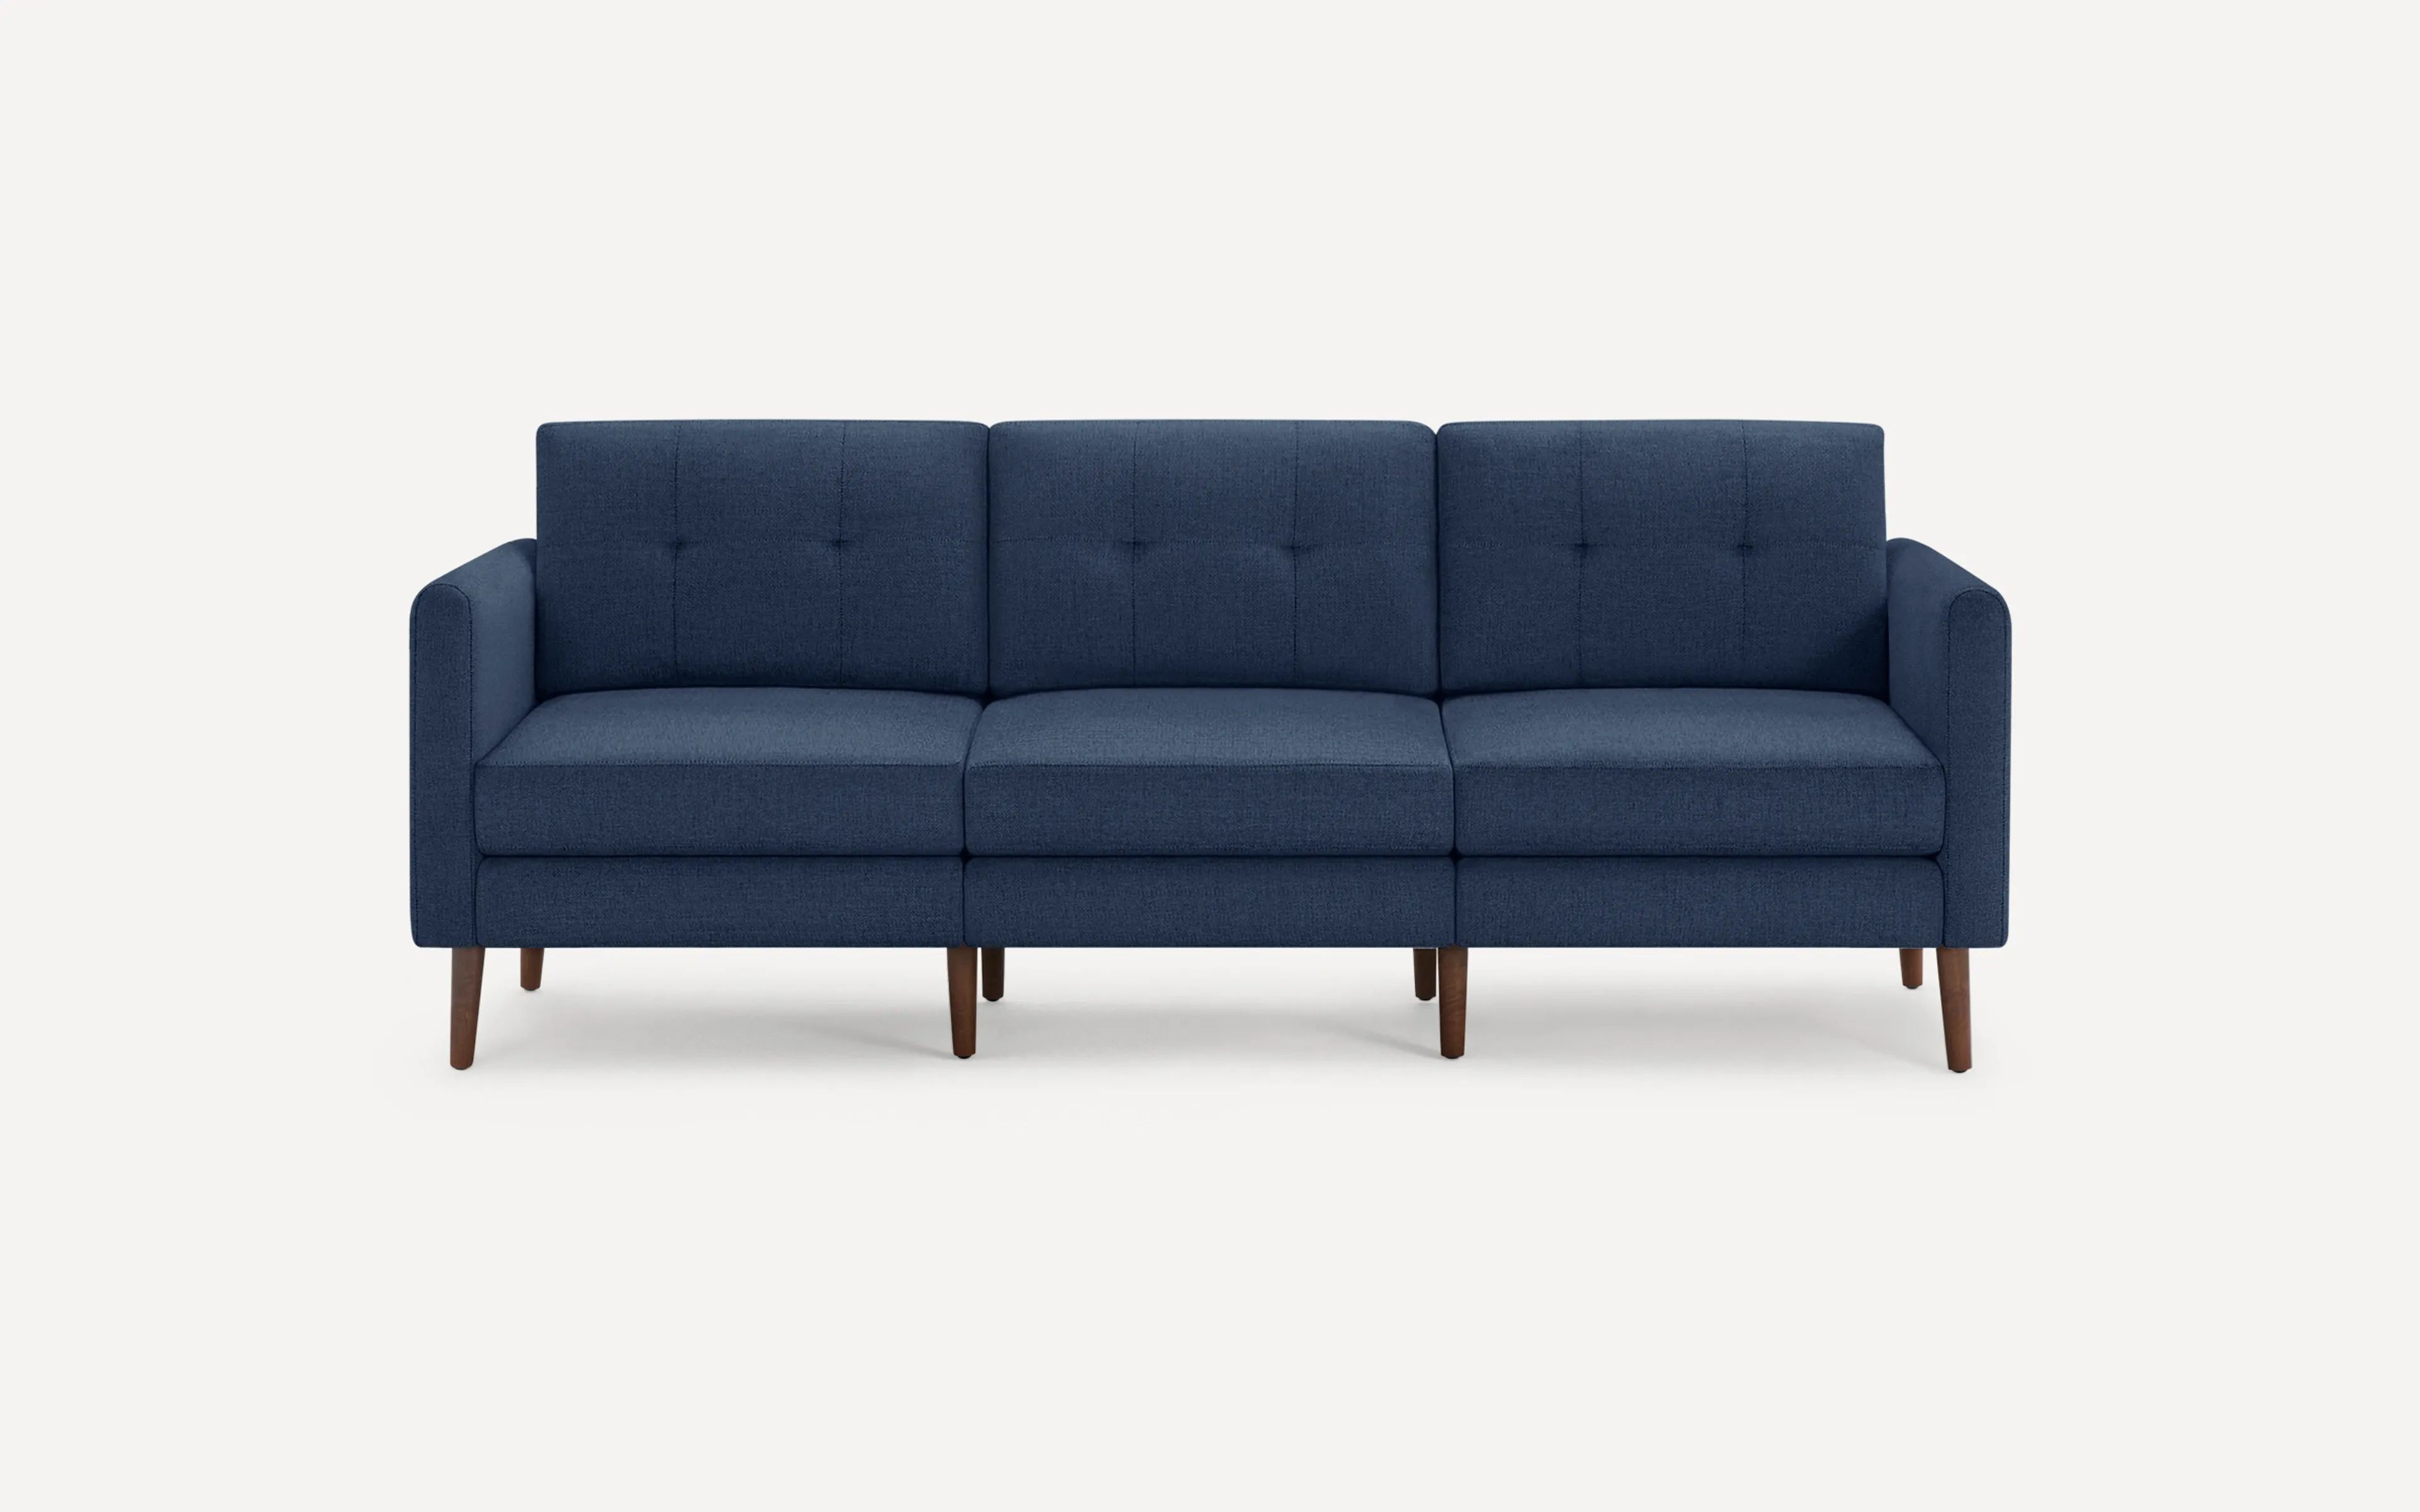 Original Nomad Sofa in Navy Blue Fabric